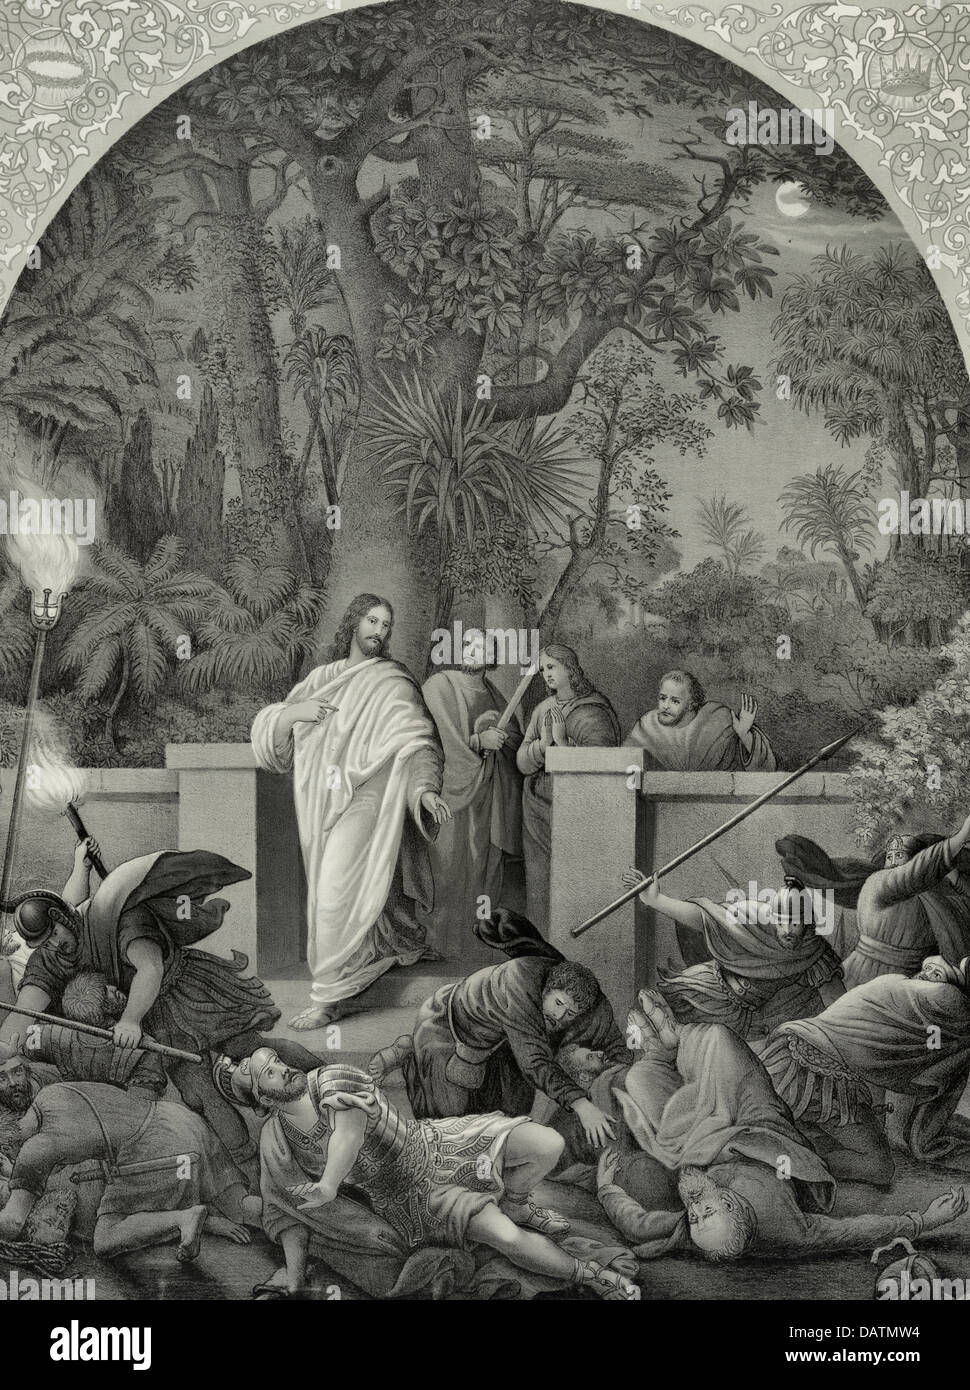 Je suis lui - Jésus Christ trahi dans le jardin de Gethsémané Banque D'Images